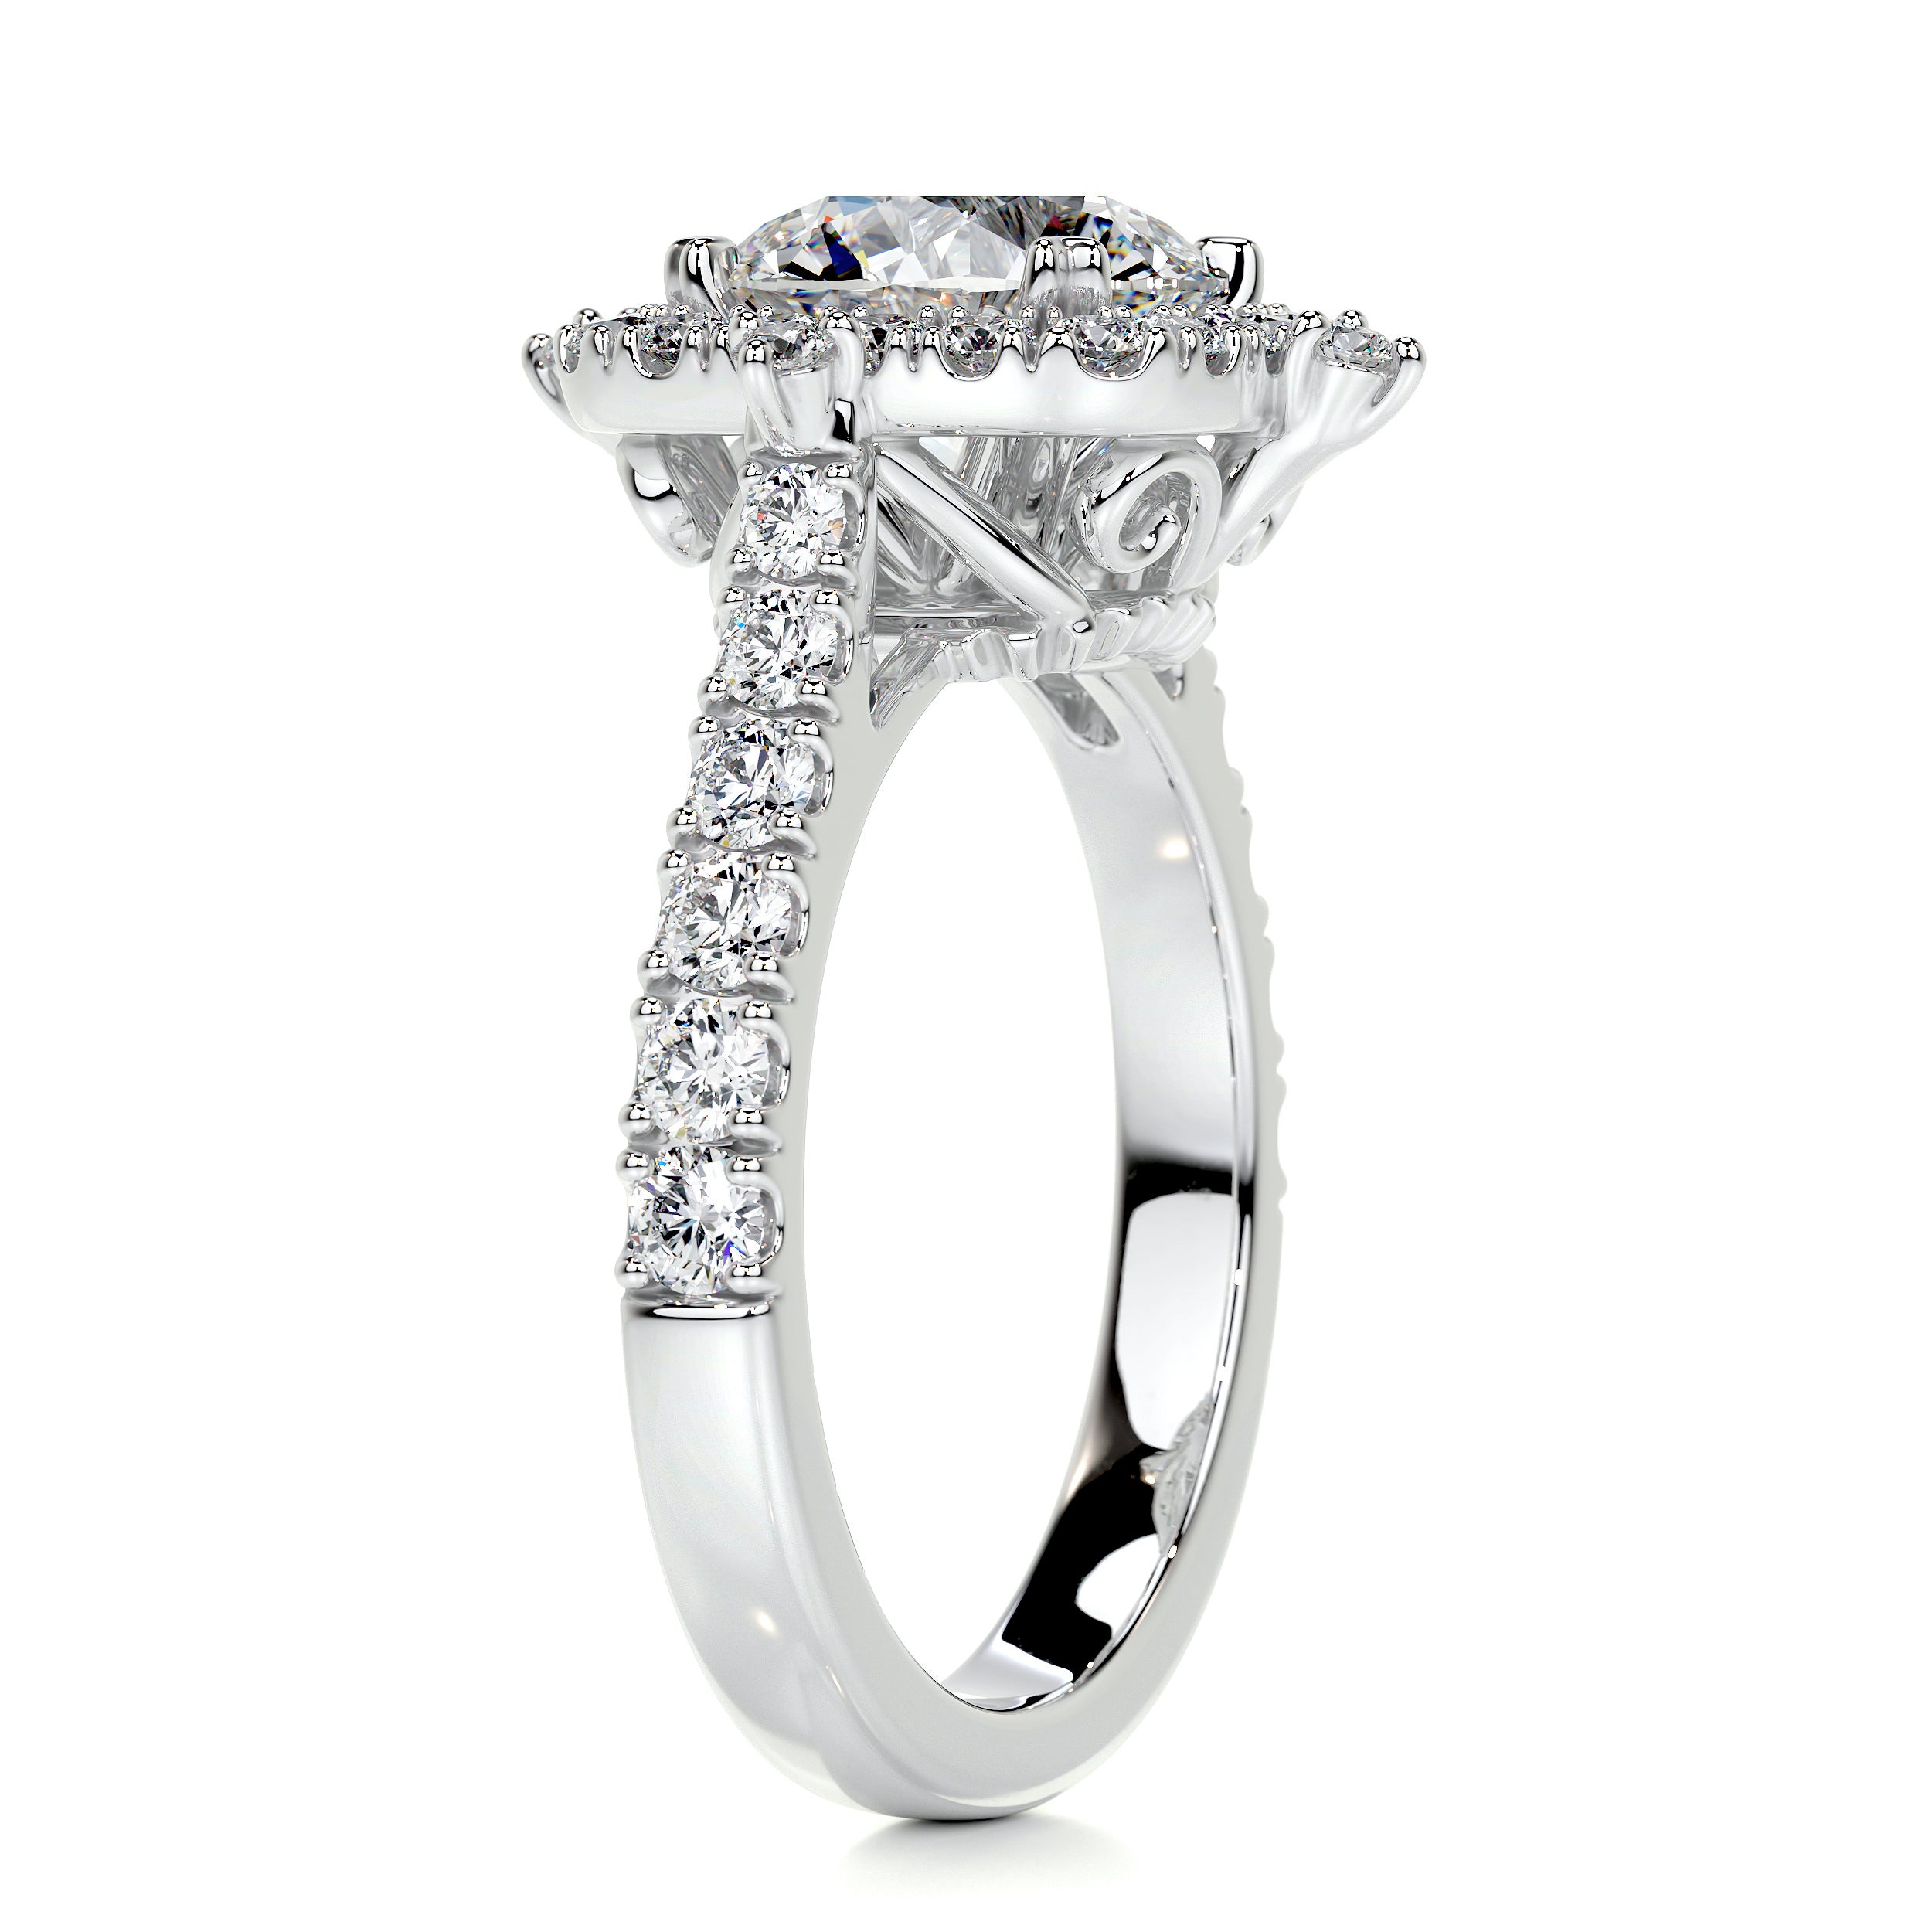 Francesca Diamond Engagement Ring -14K White Gold